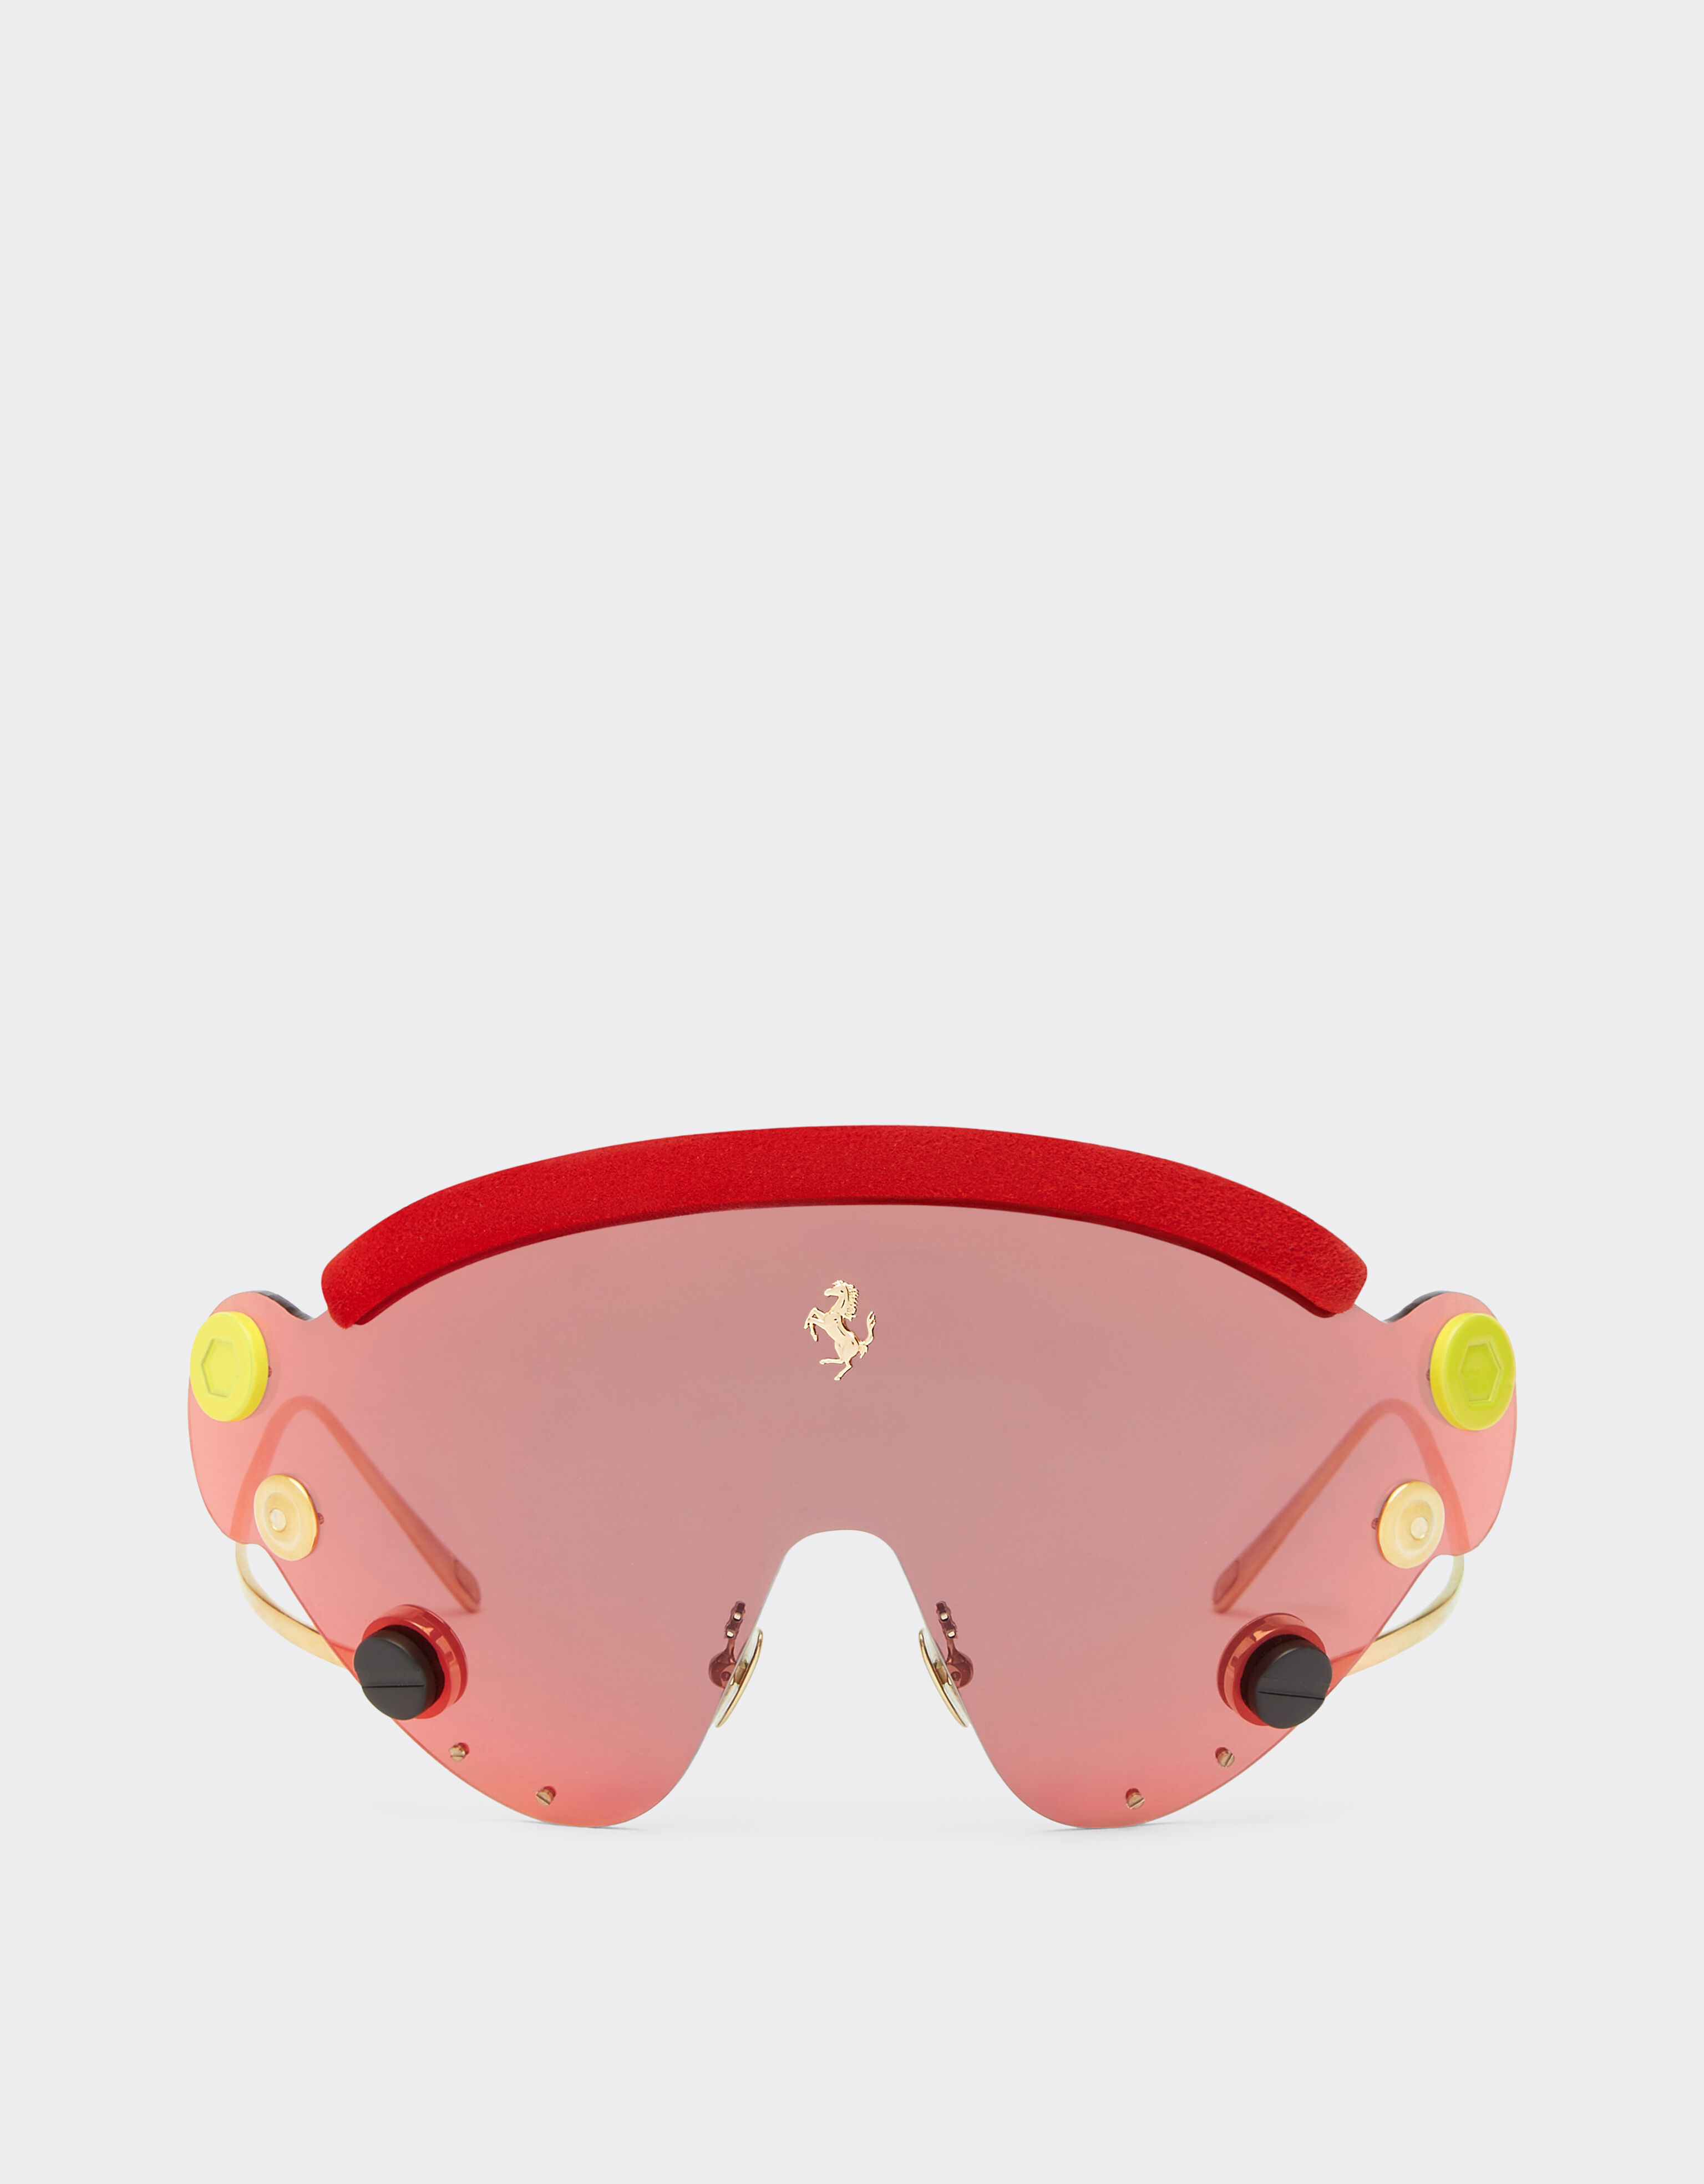 Ferrari Gafas de sol de Ferrari de edición limitada en metal rojo y dorado con pantalla de espejo roja Rojo F1243f